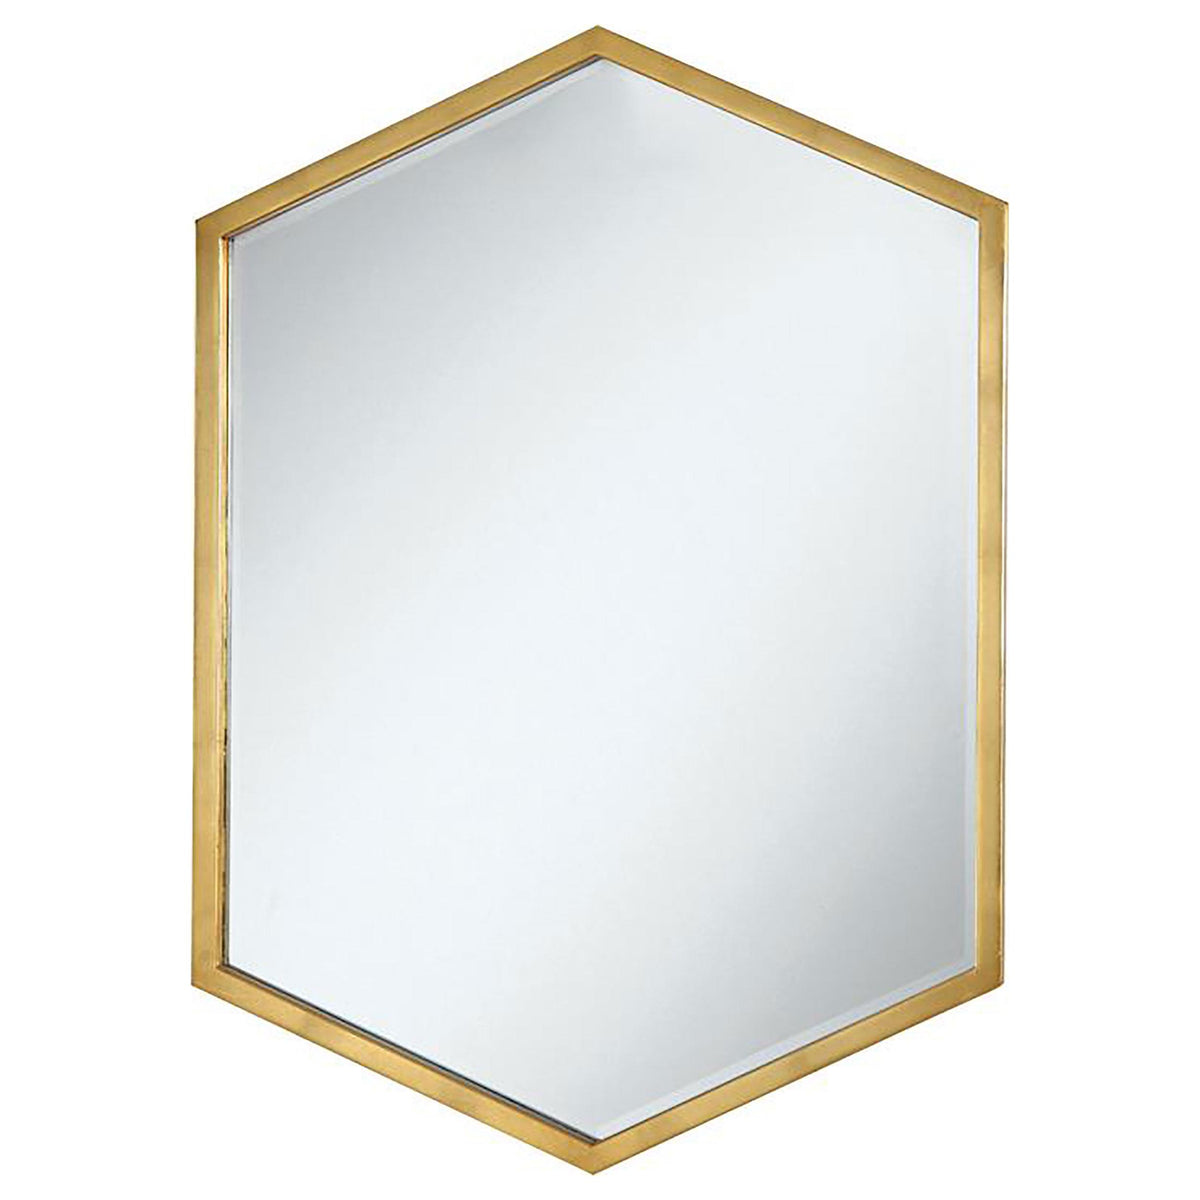 Bledel Hexagon Shaped Wall Mirror Gold Bledel Hexagon Shaped Wall Mirror Gold Half Price Furniture